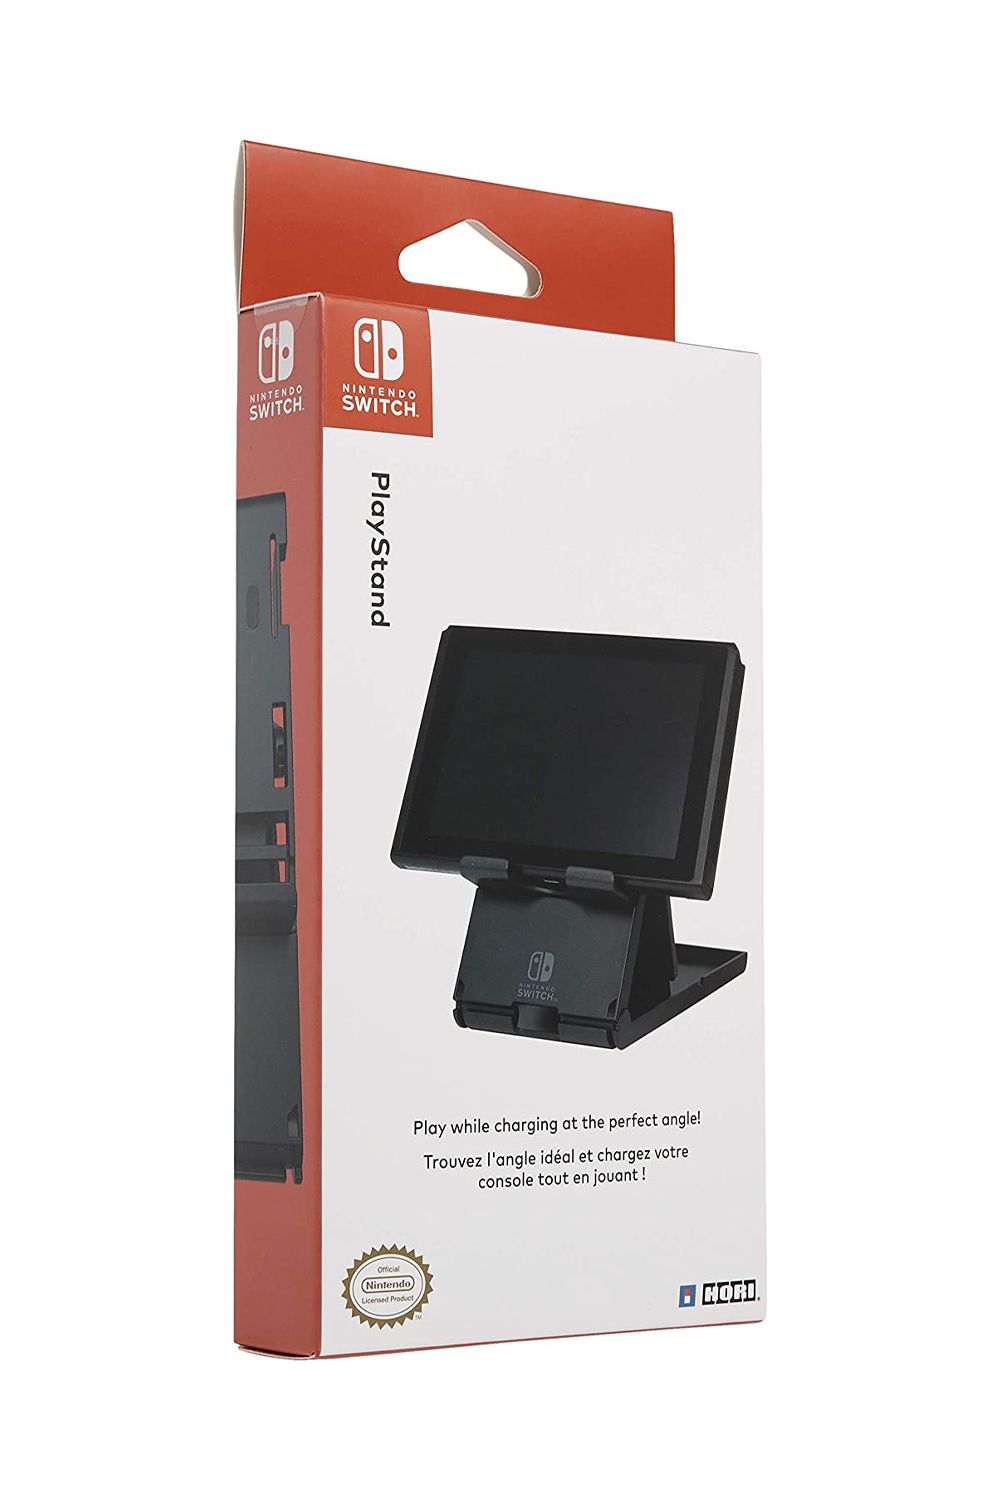 Компактная игровая подставка HORI для Nintendo Switch с официальной лицензией Nintendo.